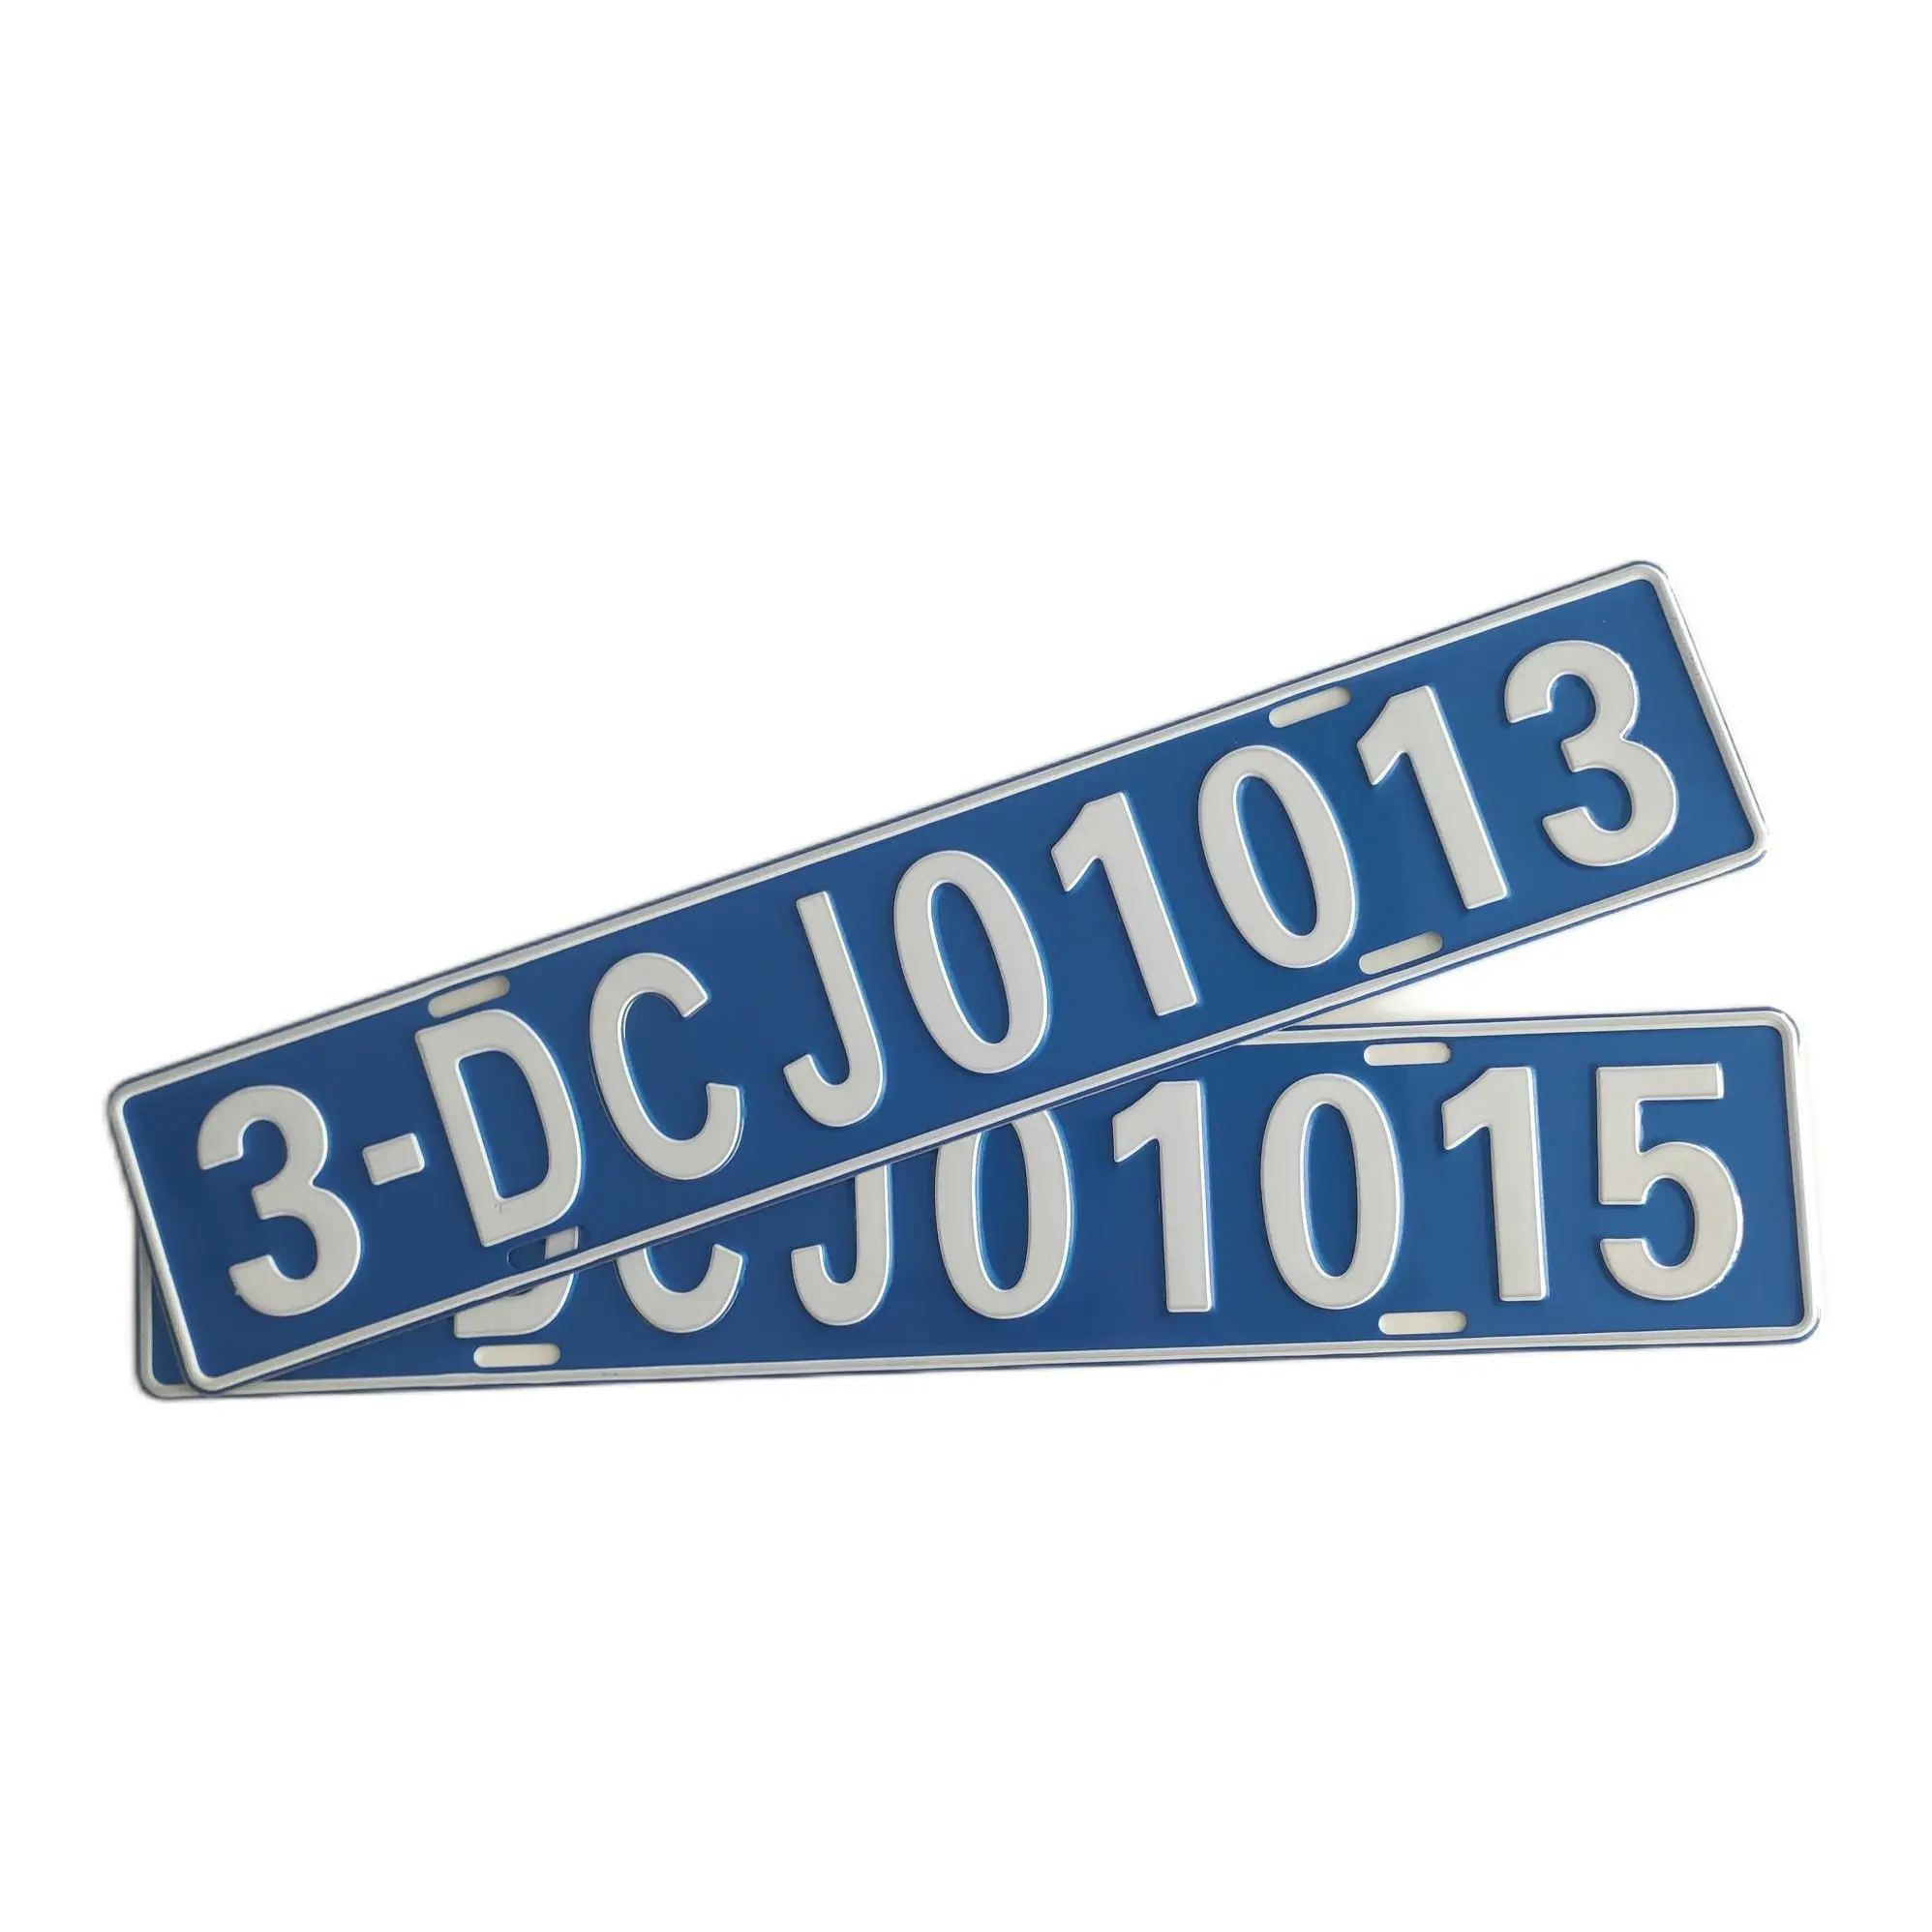 Direct fabricant européen personnalisé en aluminium plaque de voiture numéros de série feuille réfléchissante plaque d'immatriculation de voiture